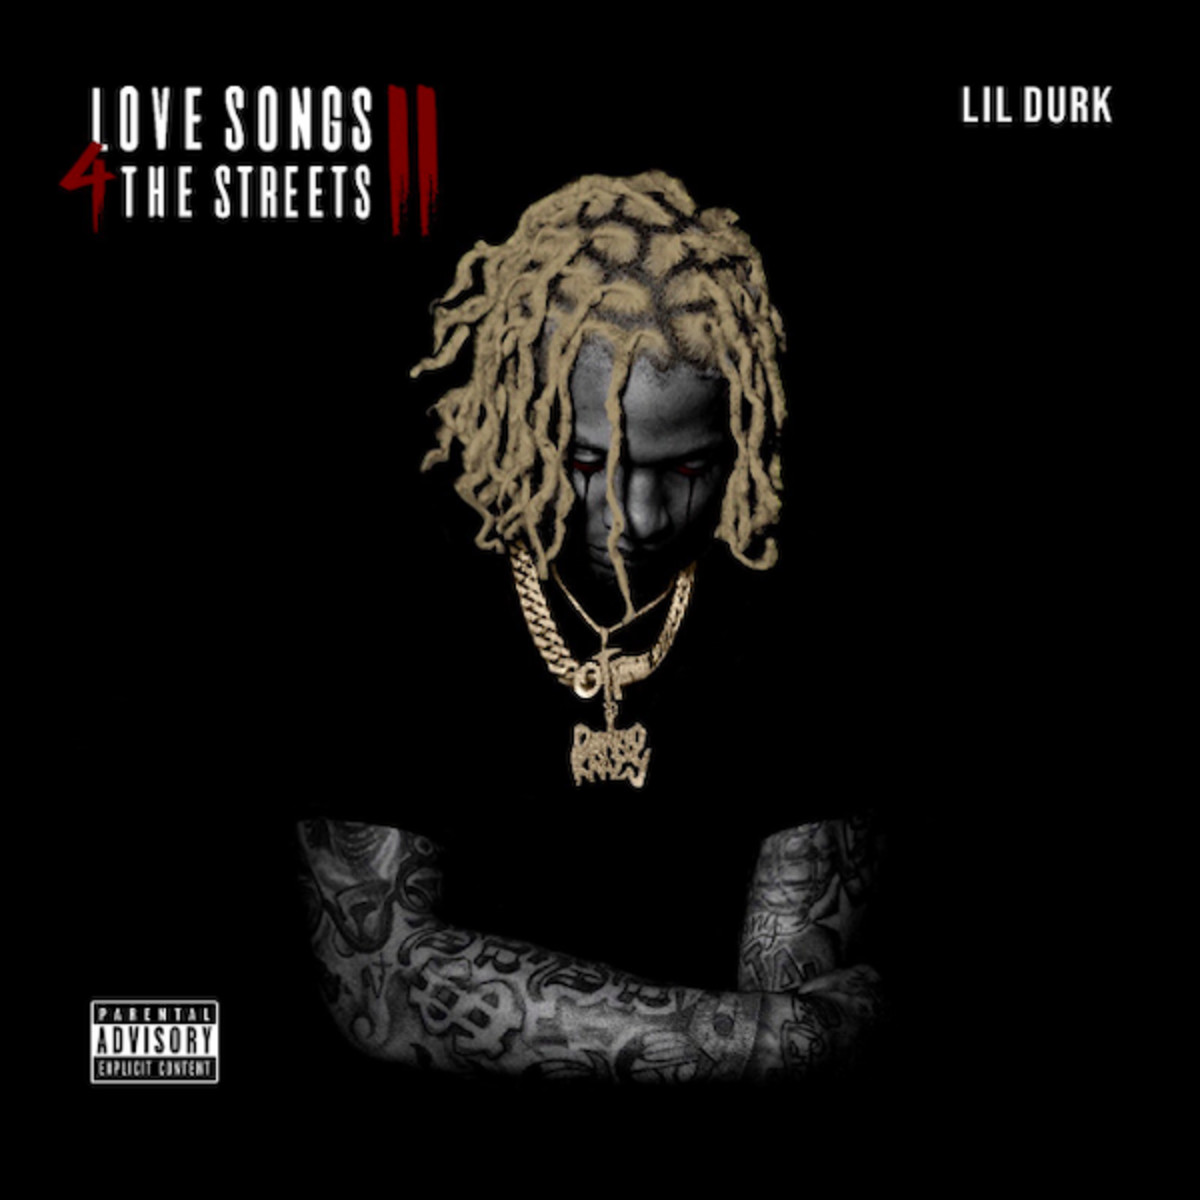 Lil Durk Drops ‘Love Songs 4 the Streets II’ f/ Meek Mill, Nicki Minaj